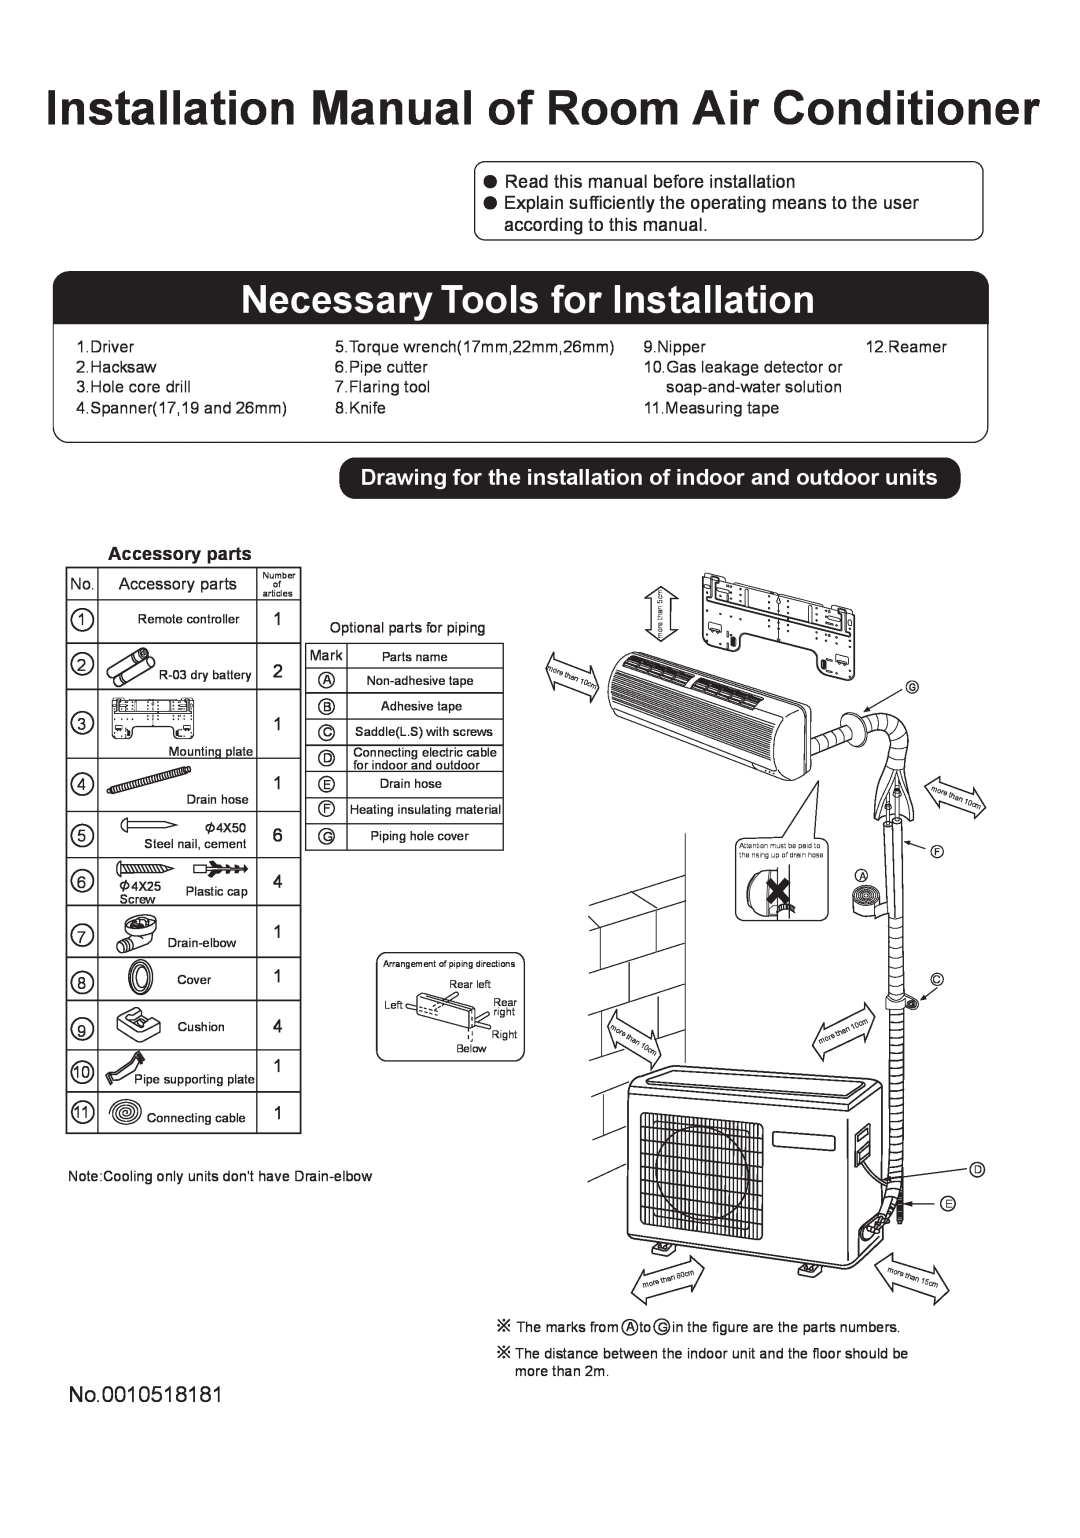 Haier HSU-12HG13-B installation manual Installation Manual of Room Air Conditioner, Necessary Tools for Installation 